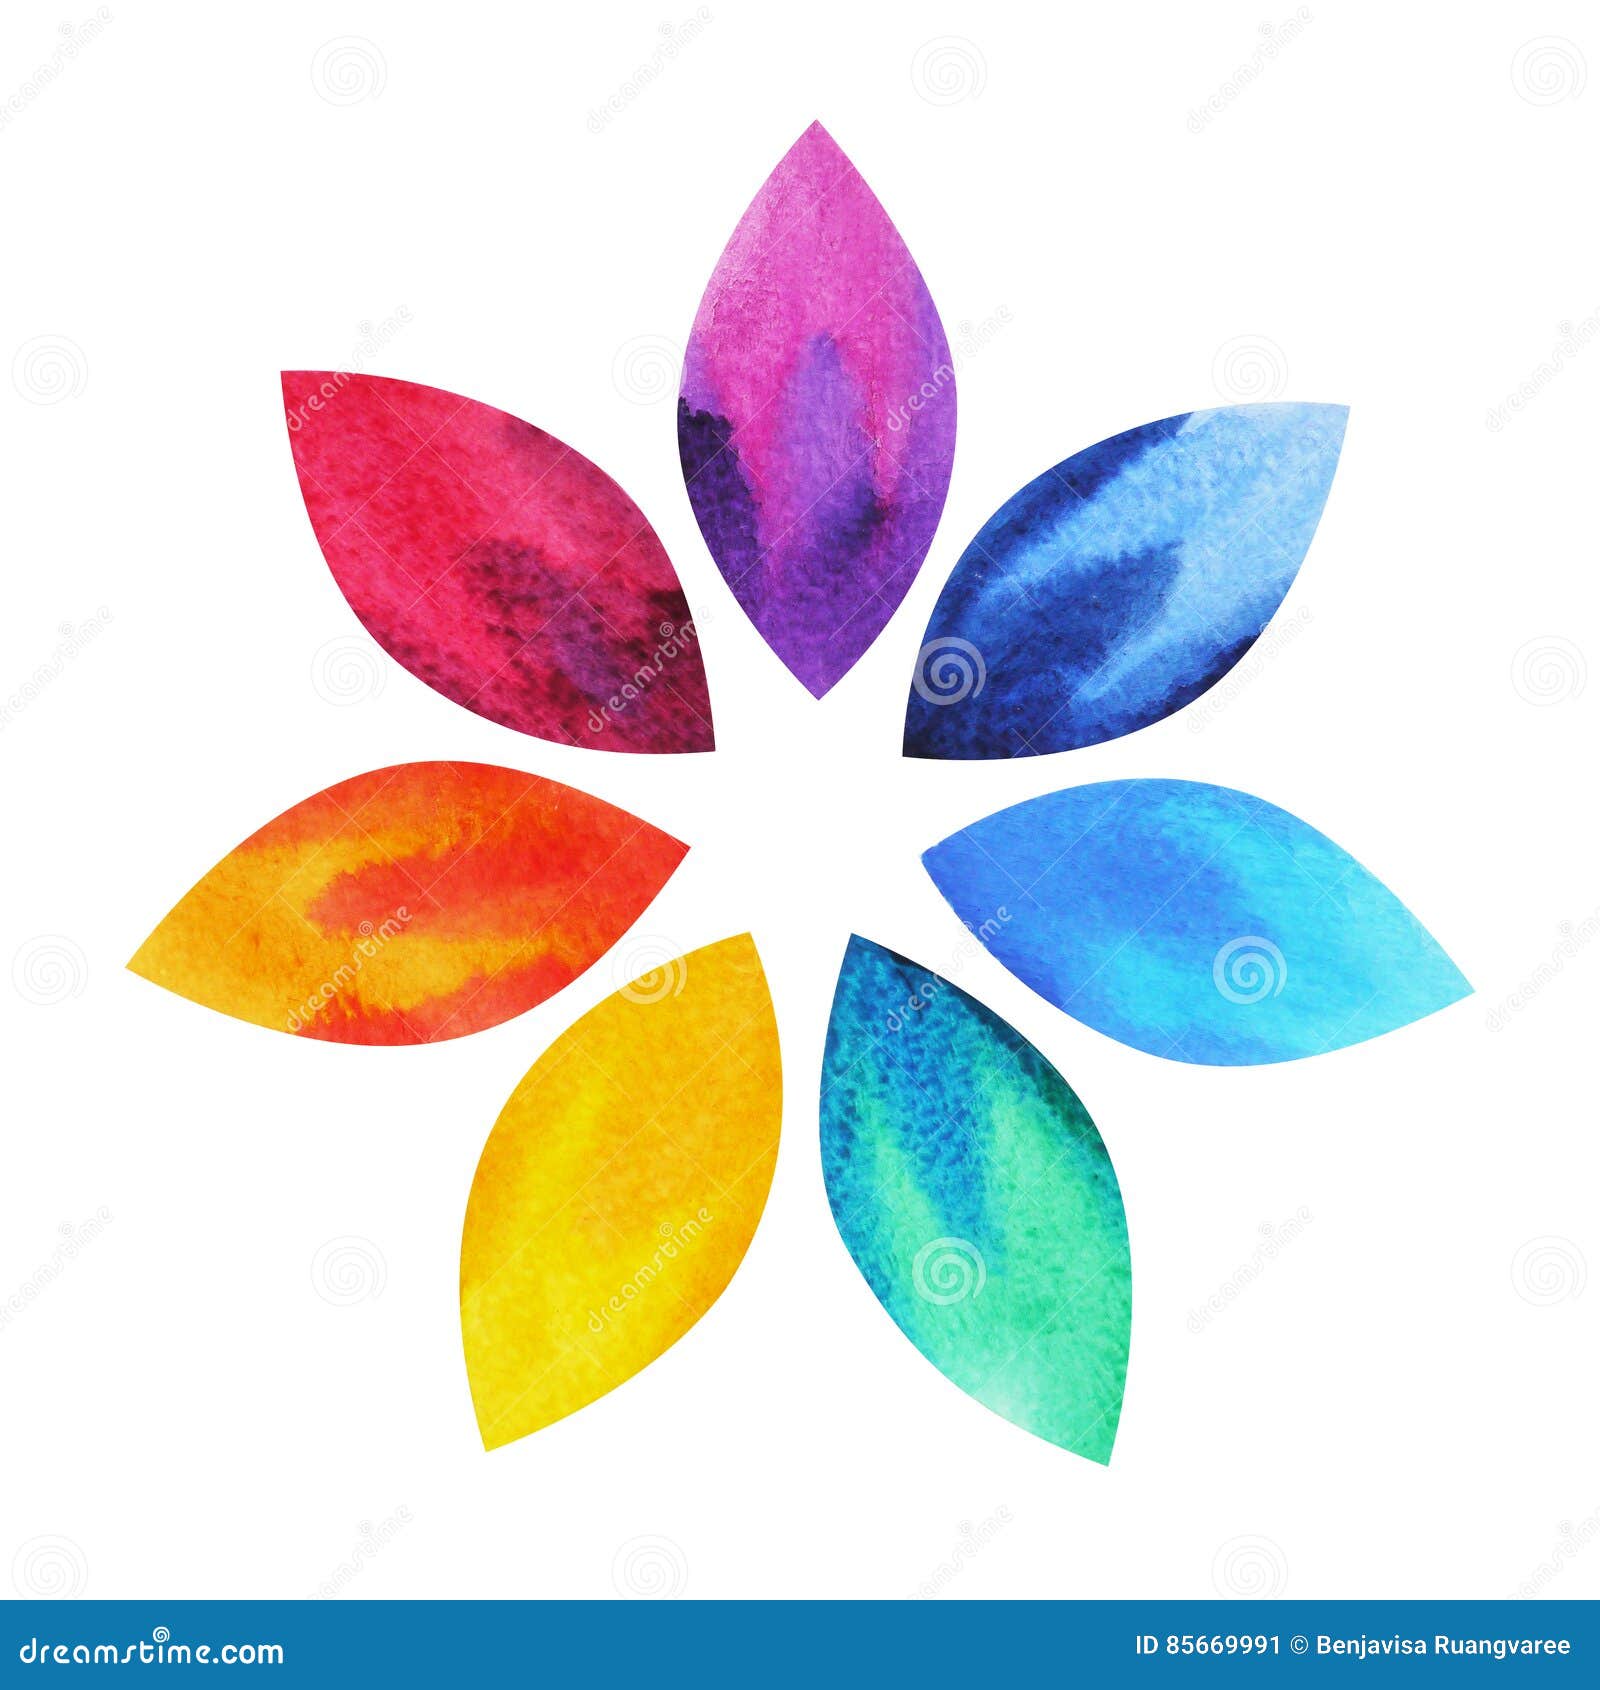 χρώμα 7 του συμβόλου σημαδιών chakra, ζωηρόχρωμο εικονίδιο λουλουδιών λωτού, χέρι ζωγραφικής watercolor που σύρεται, σχέδιο απεικόνισης